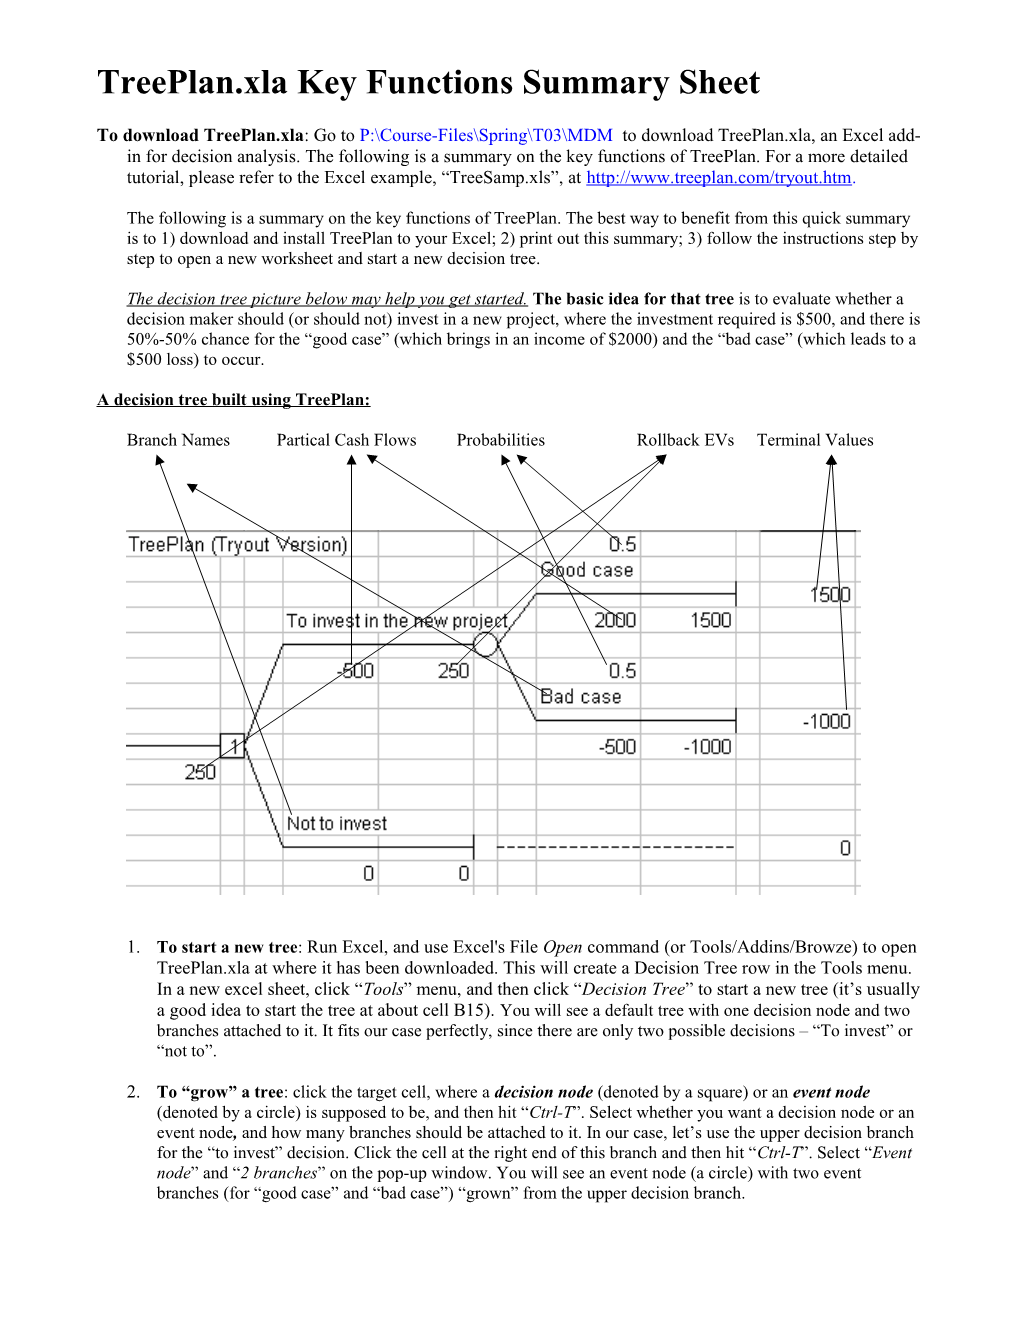 Treeplan.Xla Key Functions Summary (Continued)